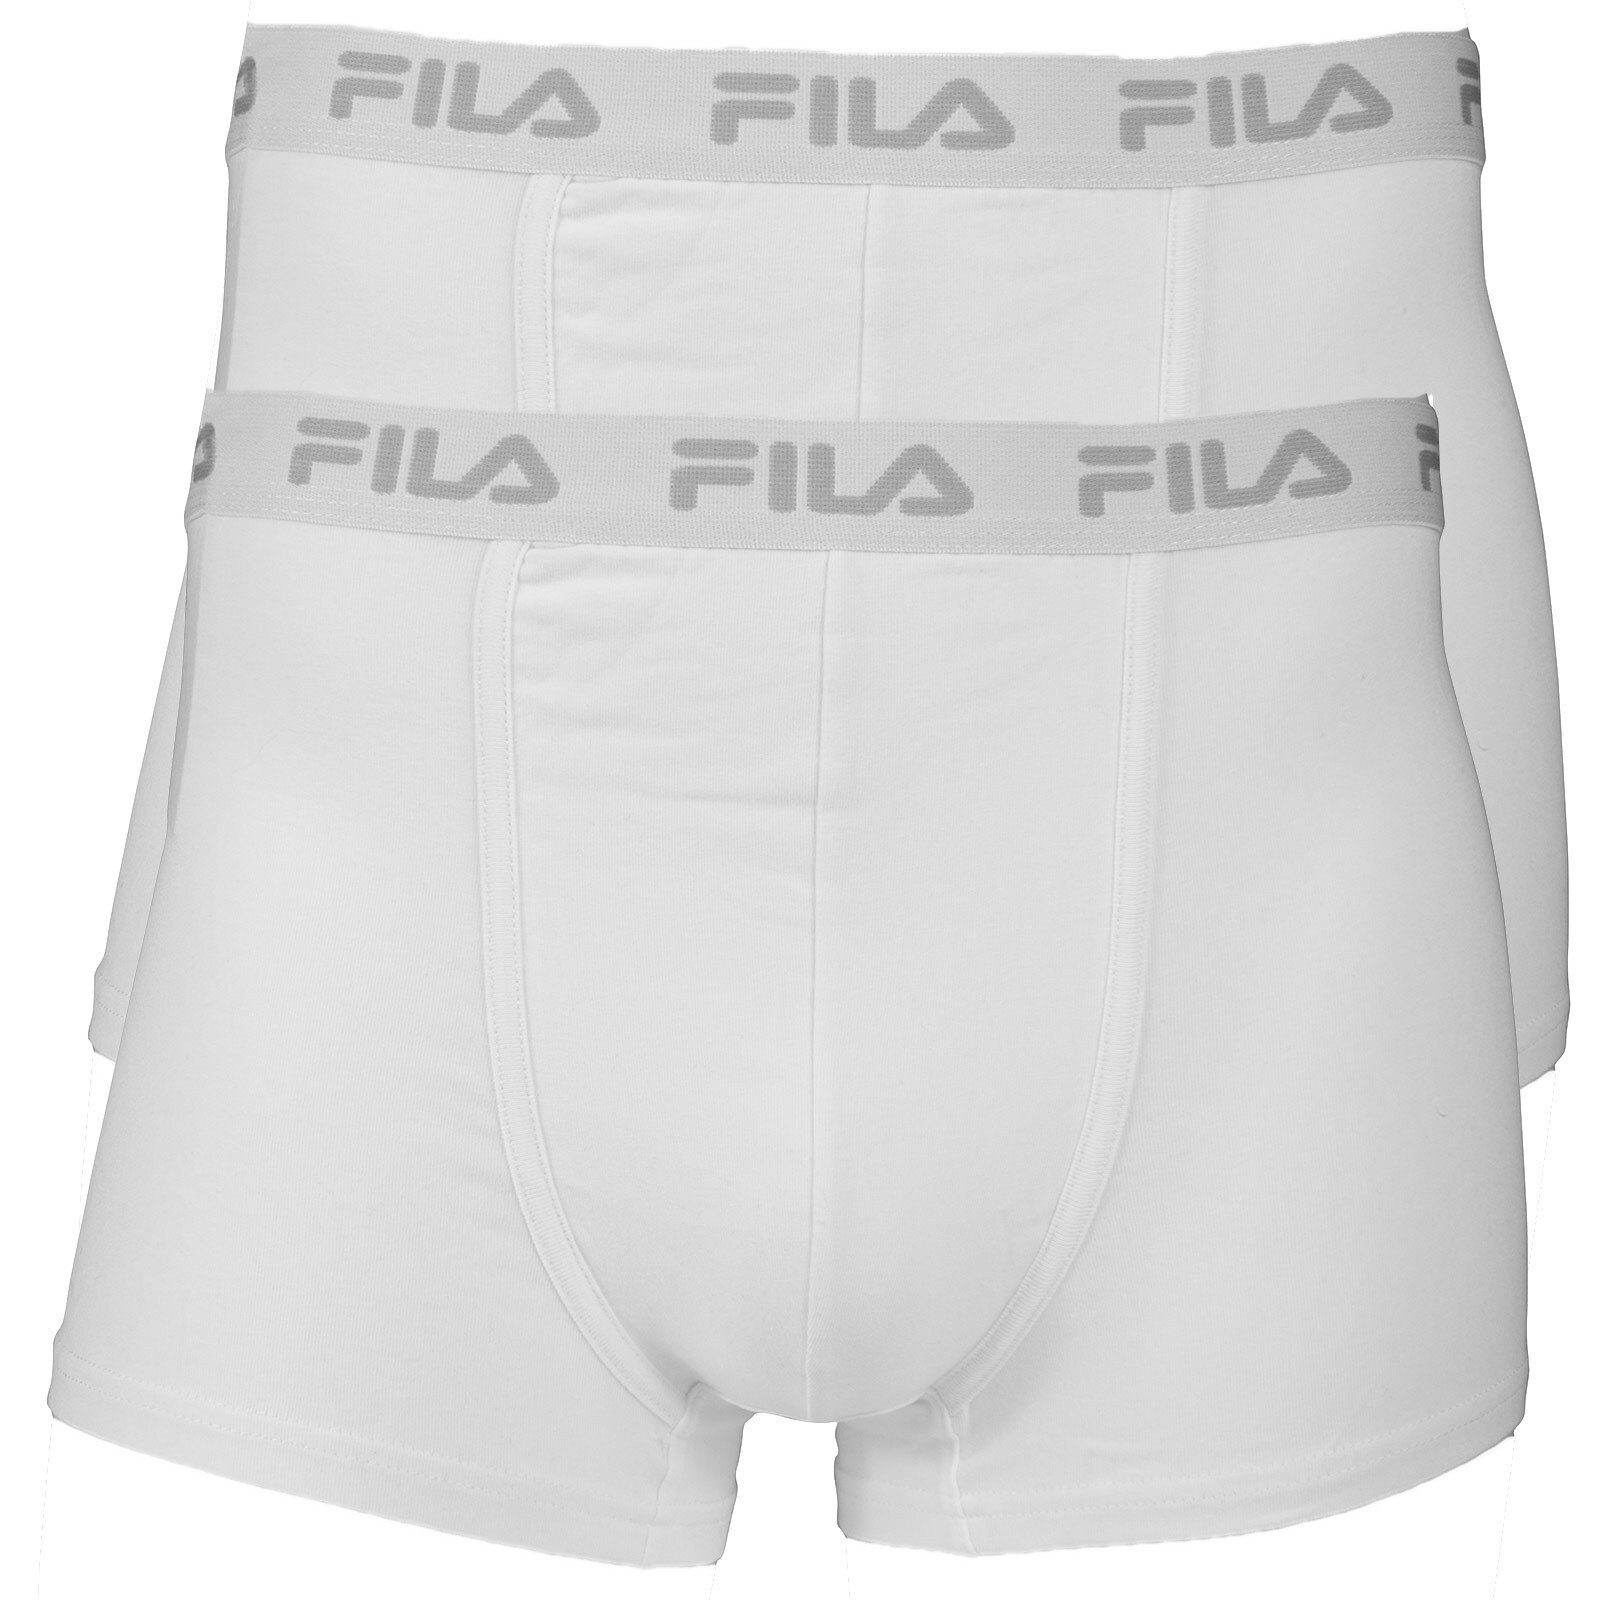 Fila Boxer Herren Boxer Shorts 2er Pack - Logobund, Cotton Weiß